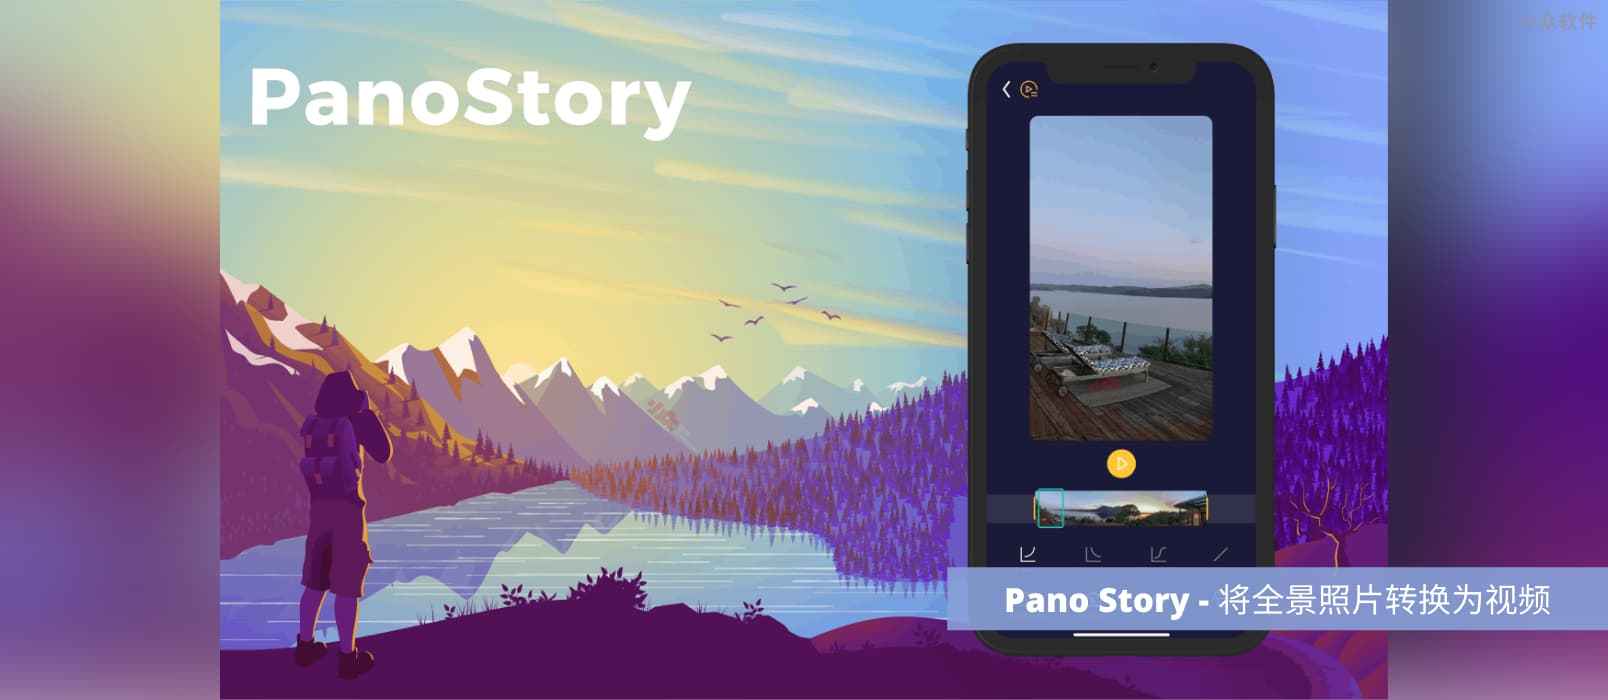 PanoStory – 将 360 度的全景照片转换为视频[iPhone]